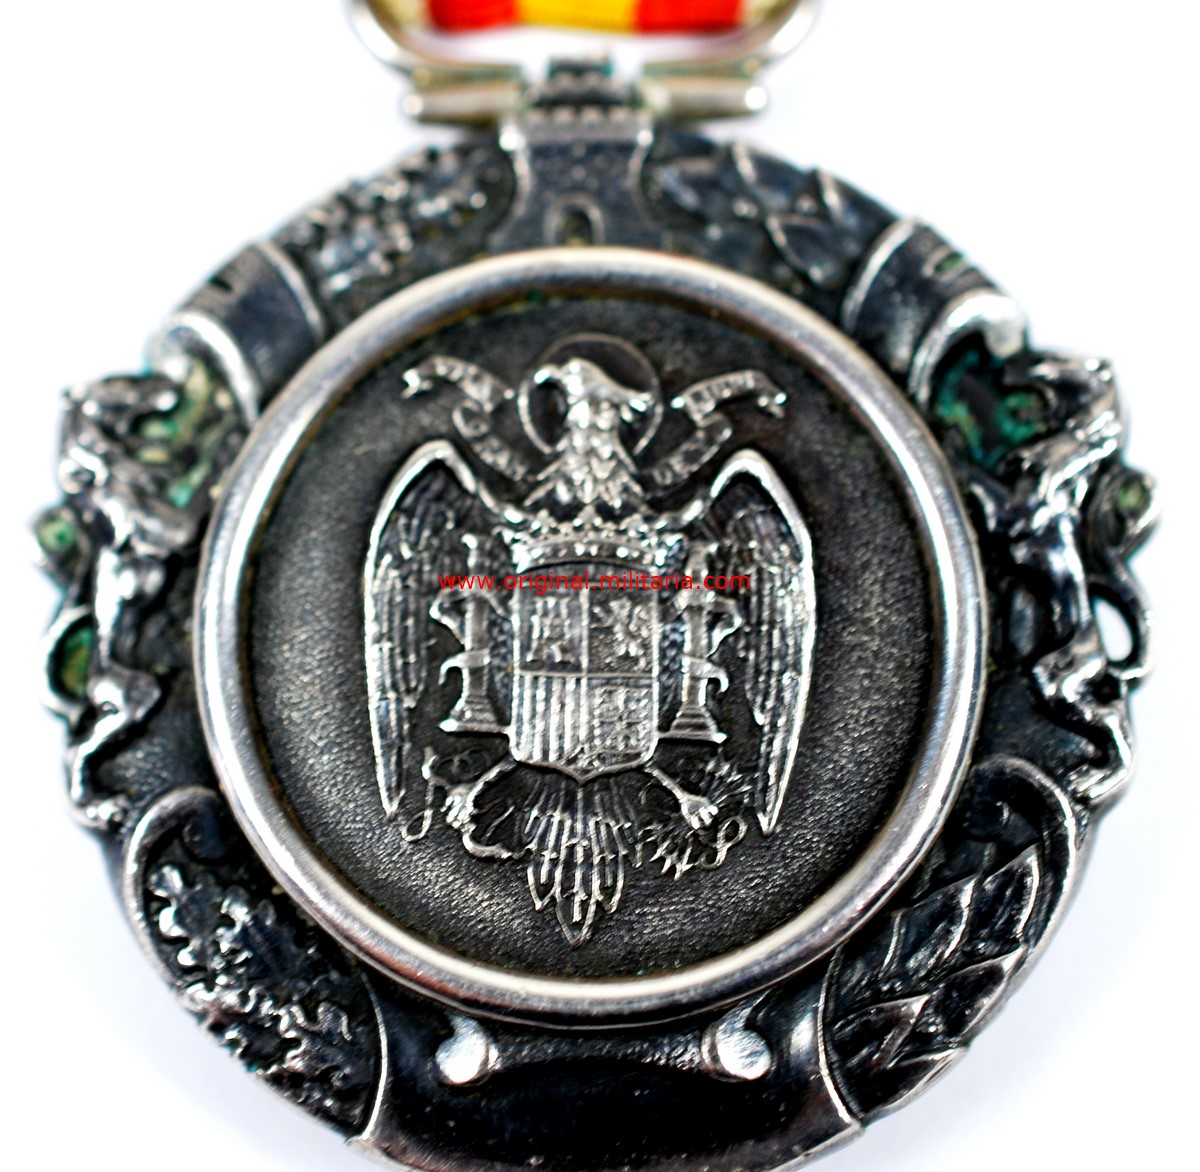 Medalla Militar Individual del nuevo Estado Español (1938-1970). Plata, Brillantes y Oro, Manufactura "CEJALVO".